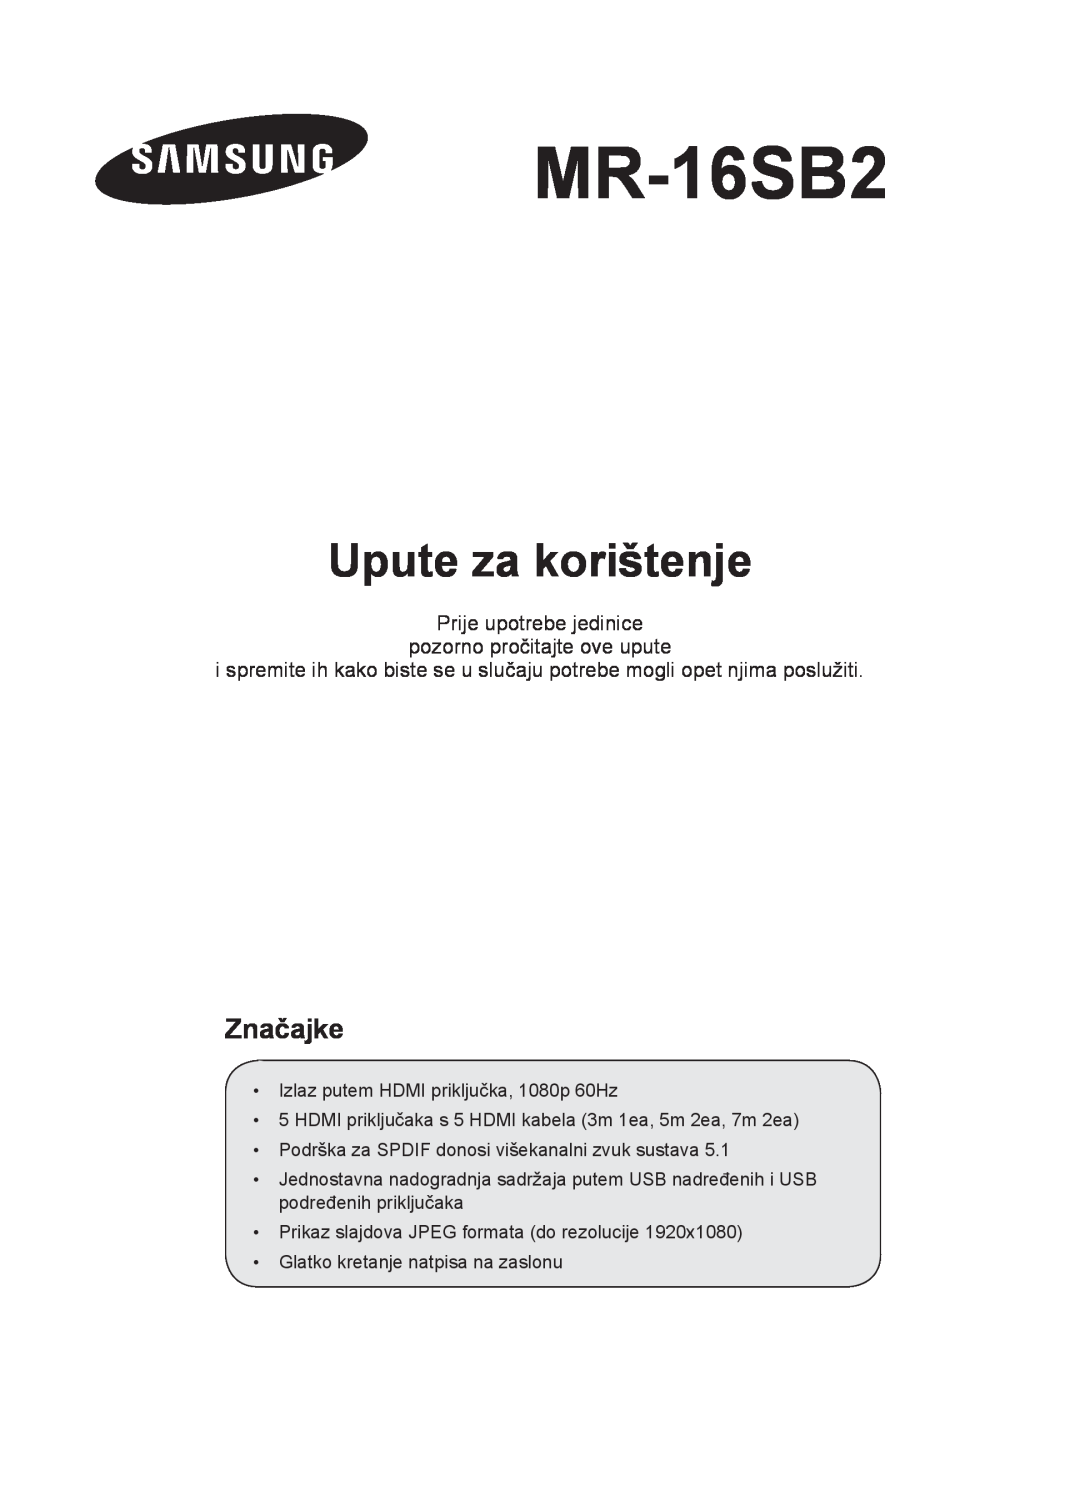 Samsung MR-16SB2 manual Upute za korištenje, Značajke, Prije upotrebe jedinice pozorno pročitajte ove upute 